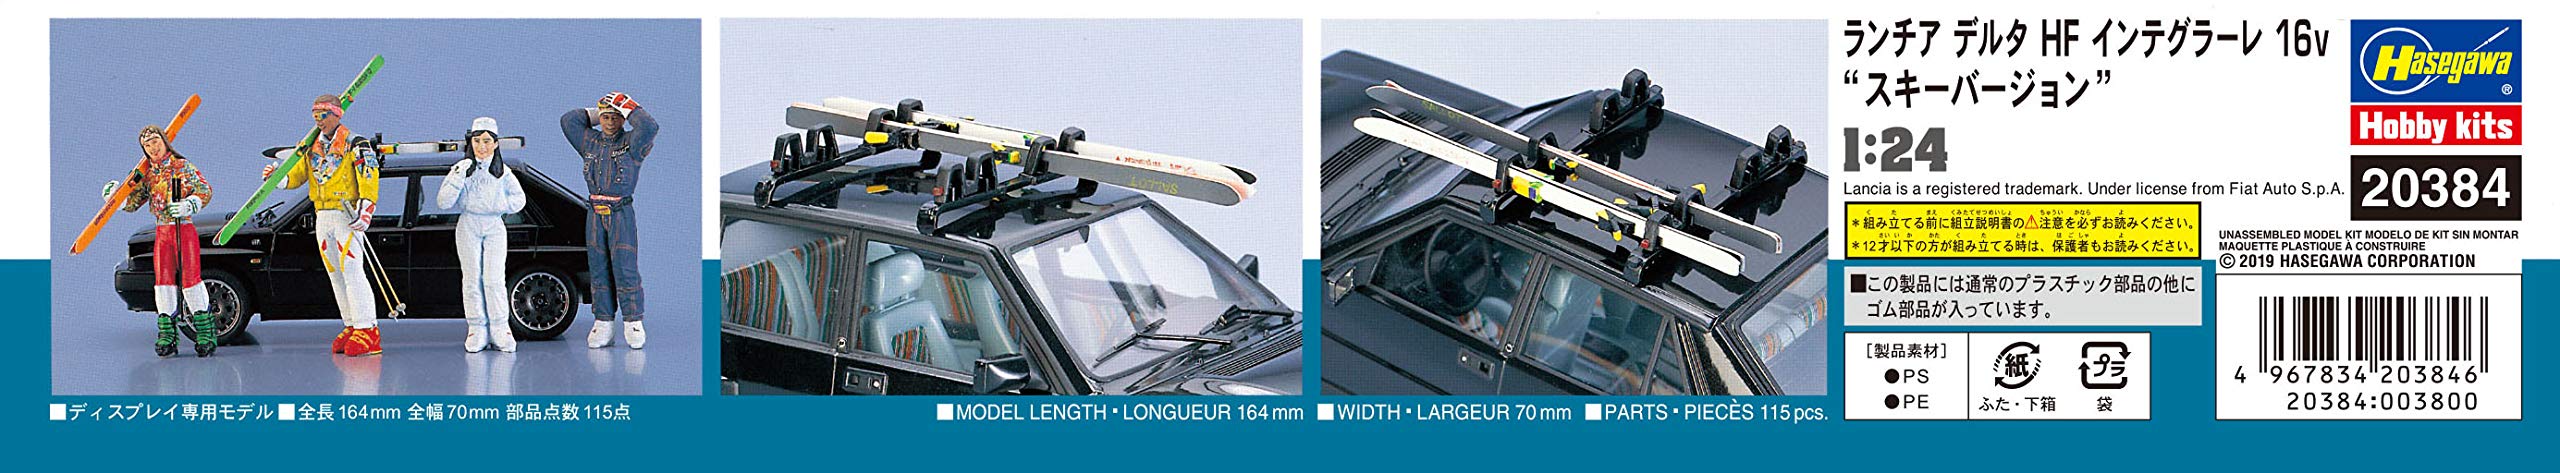 Hasegawa 20384 1/24 Lancia Delta Hf Integrale 16V Version Ski Modèle Plastique